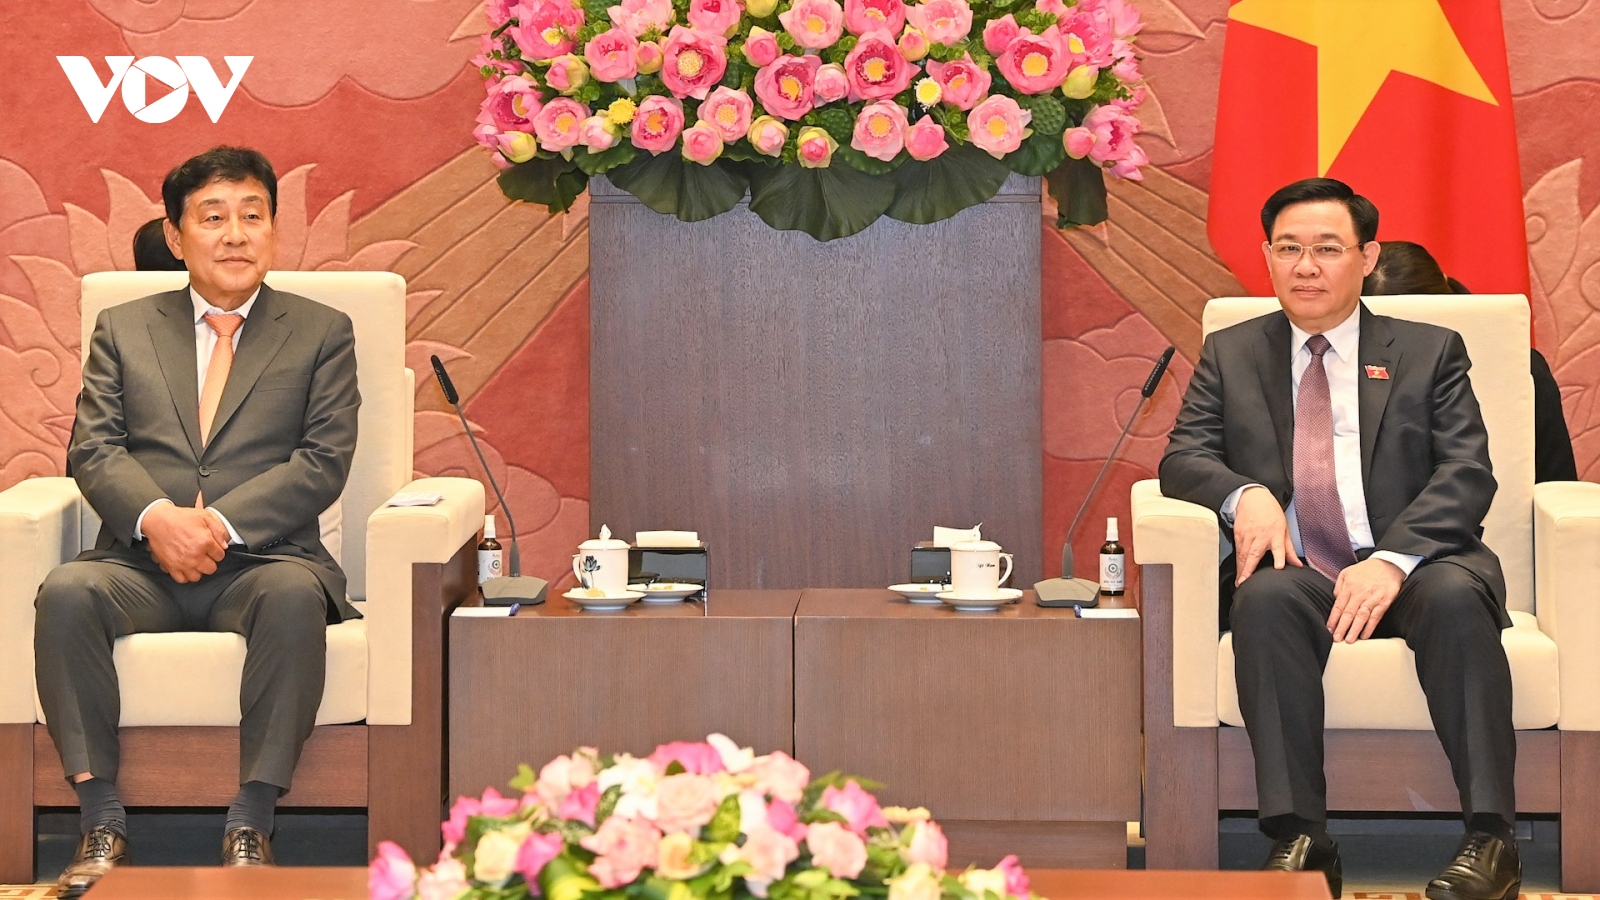 Chủ tịch Quốc hội Vương Đình Huệ tiếp lãnh đạo Tập đoàn Tài chính Hana Hàn Quốc